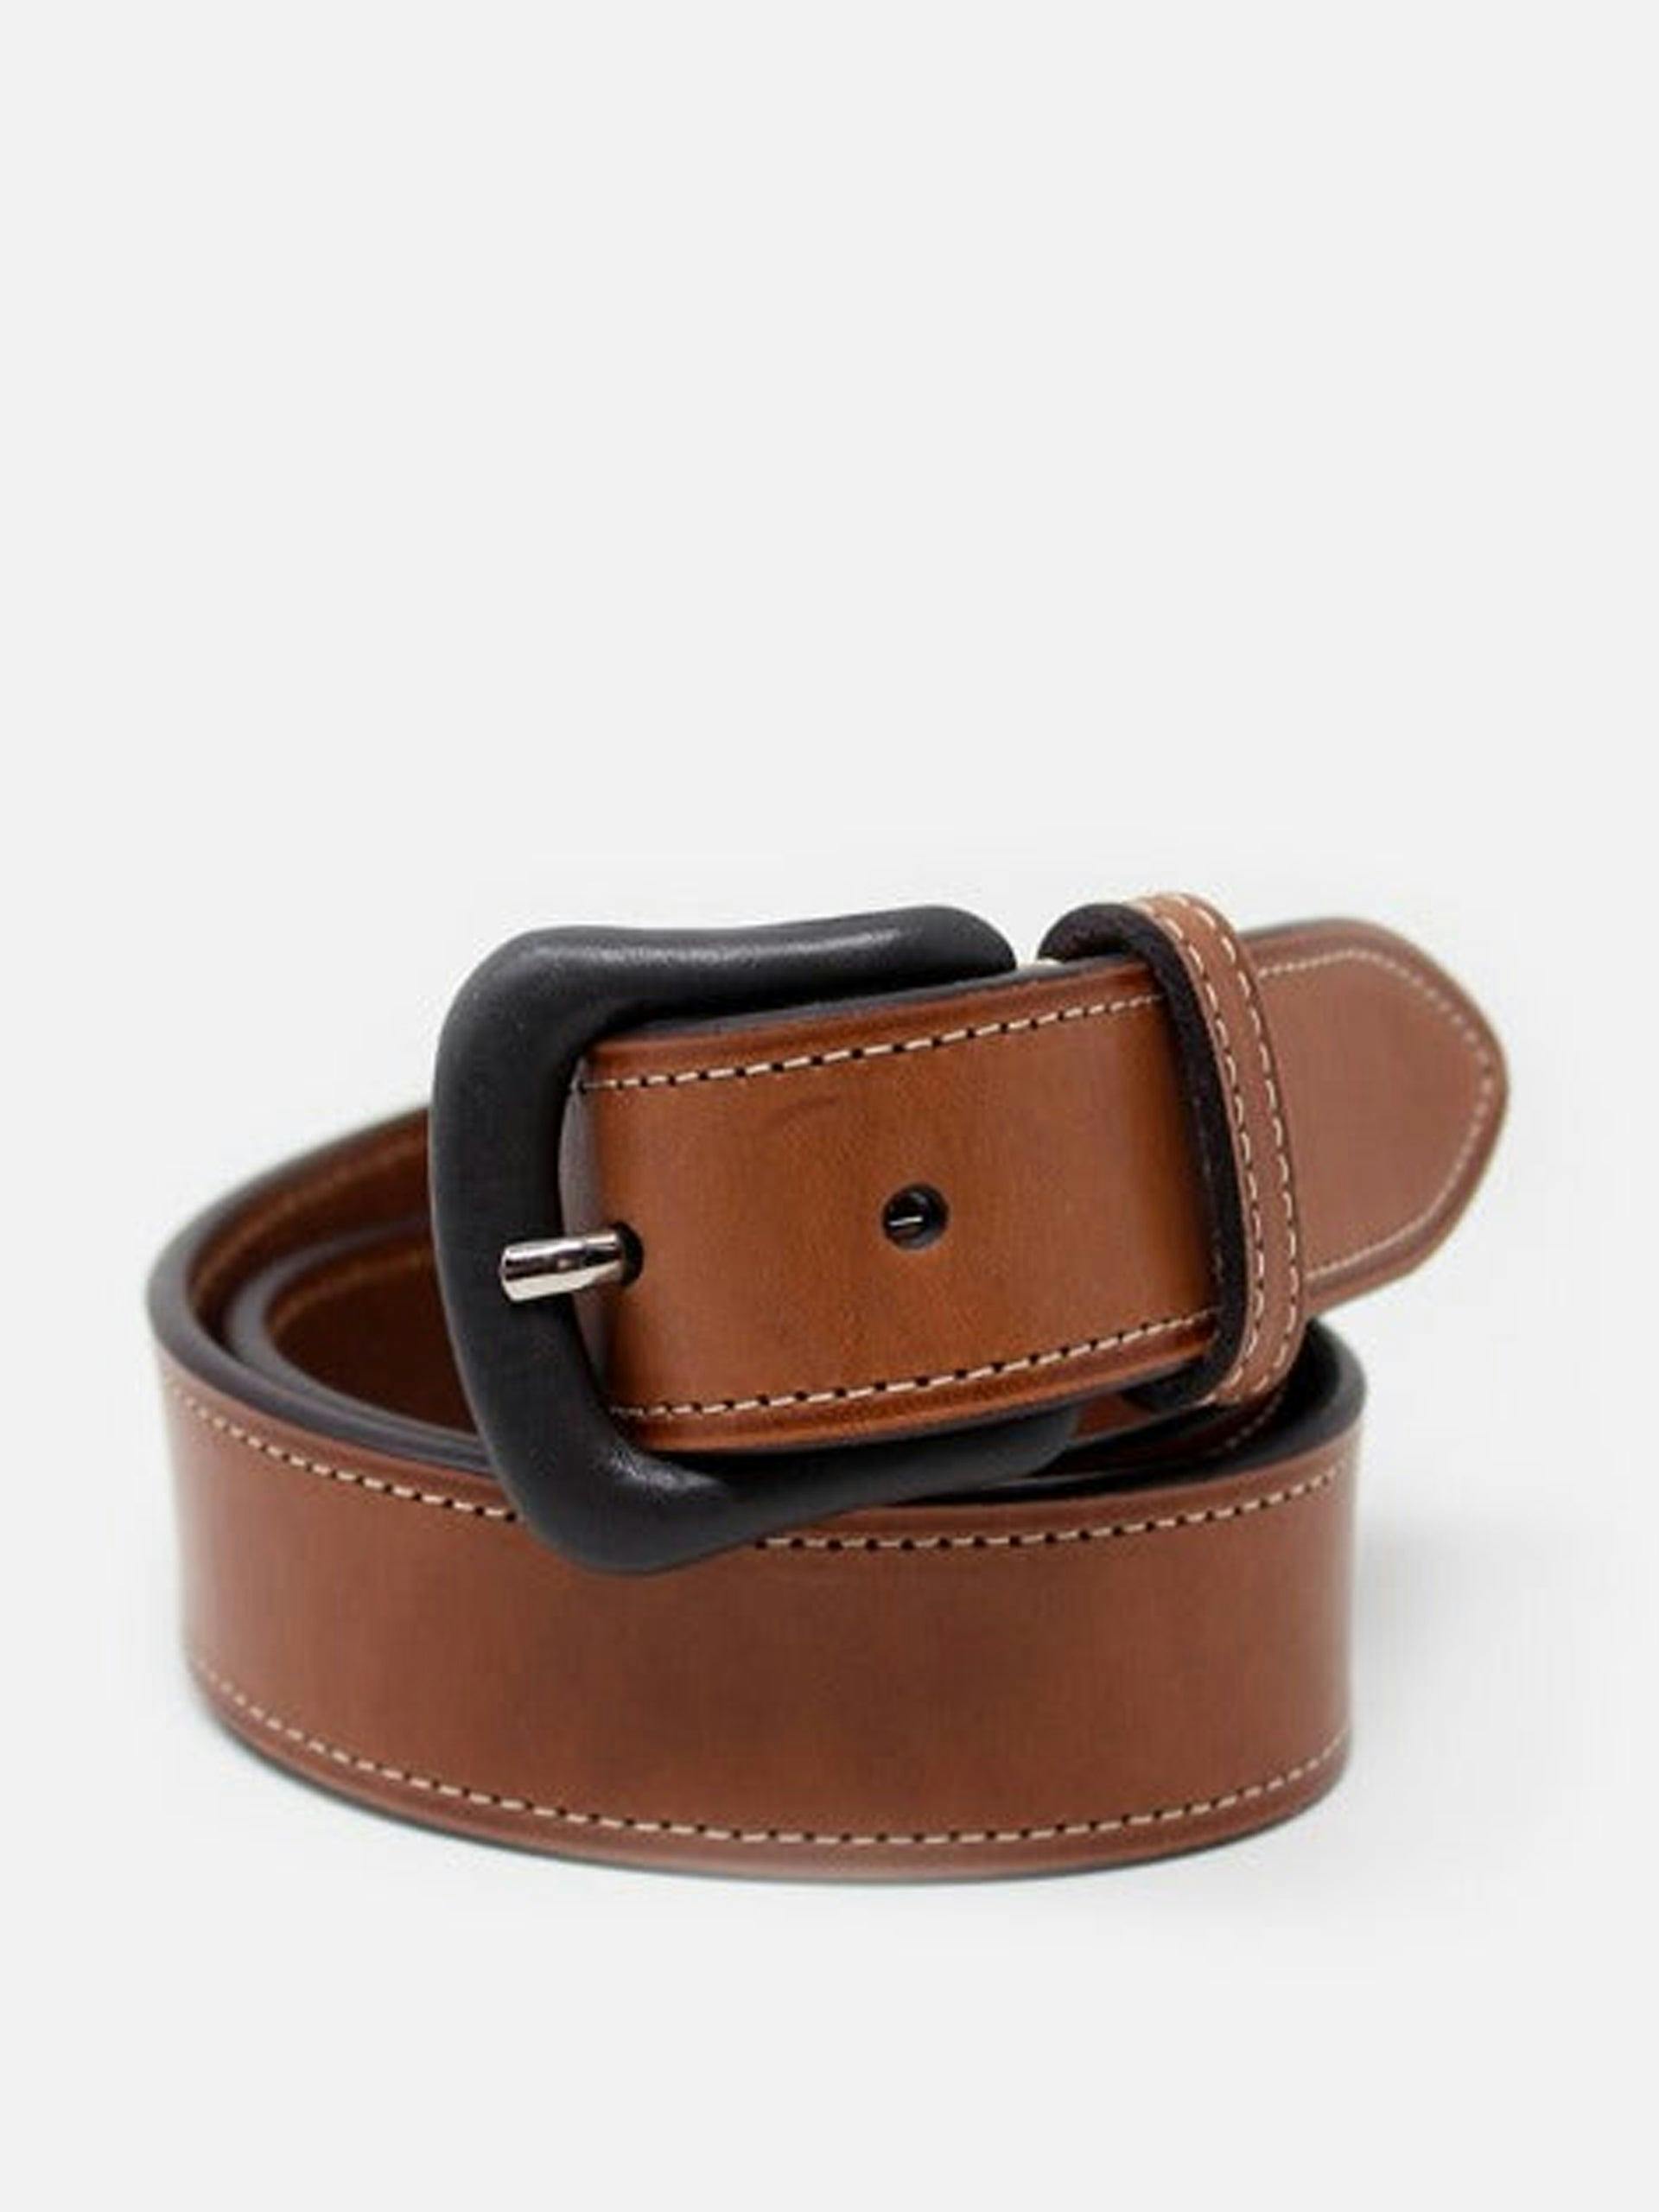 Brown leather calfskin belt